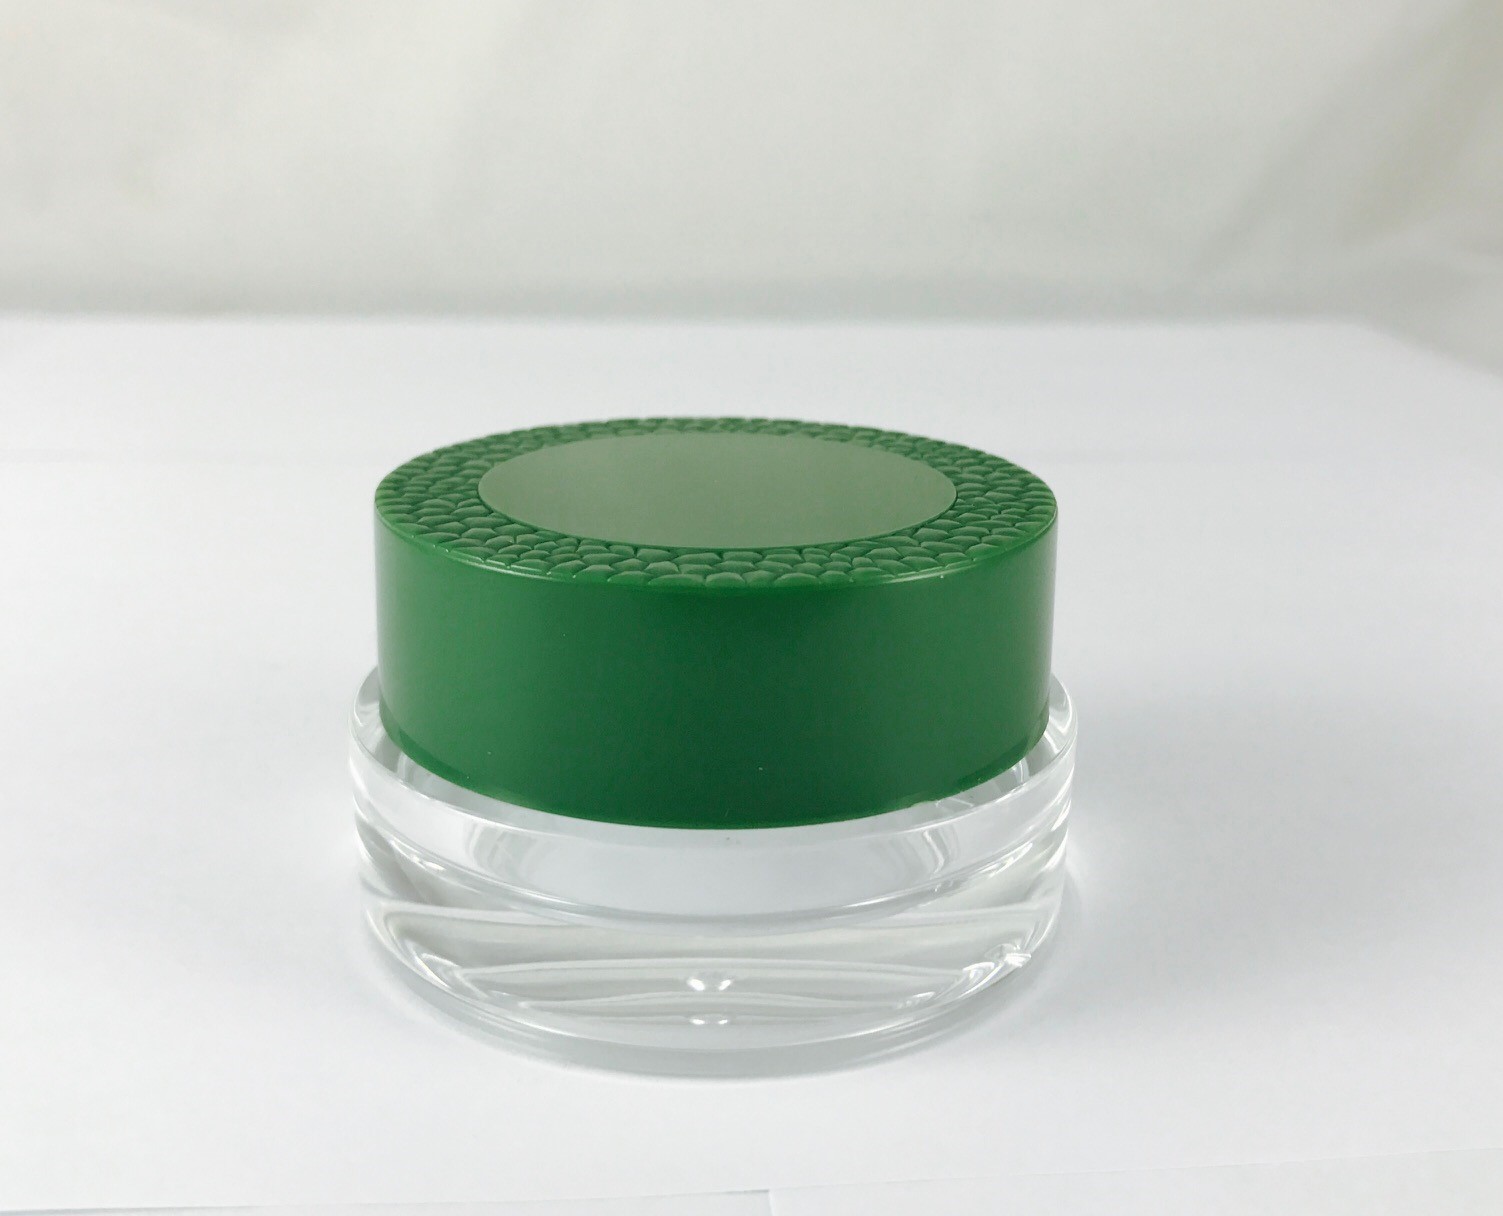 Runde grüne Injektionskappe